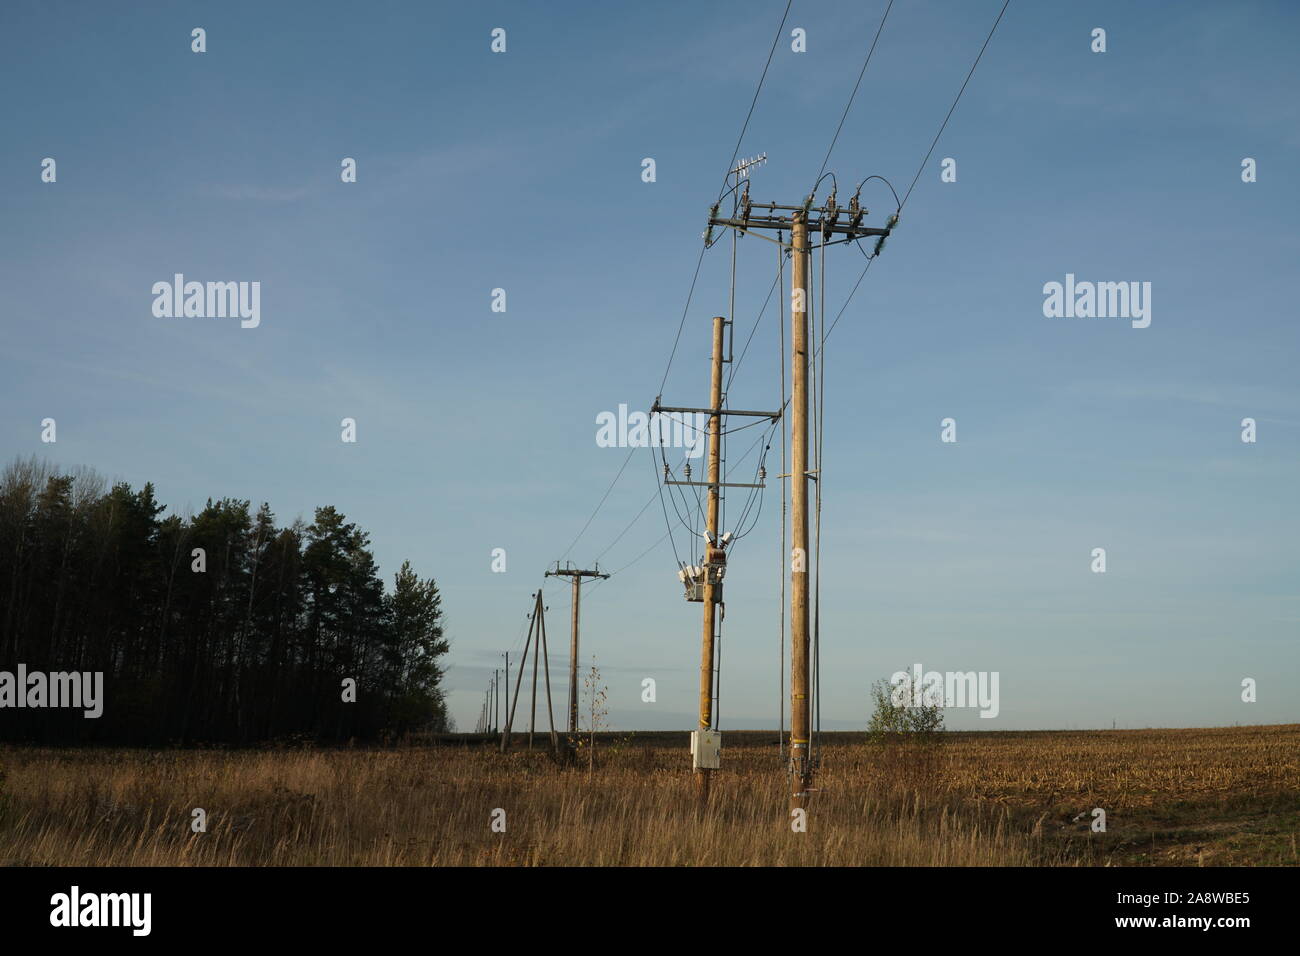 Landschaft mit der Spannung - aktuelle Zeile. Stromversorgung Polen Bau in der Natur. Blick auf die elektrische Verteilung Linie in einer ländlichen Umgebung. Stockfoto